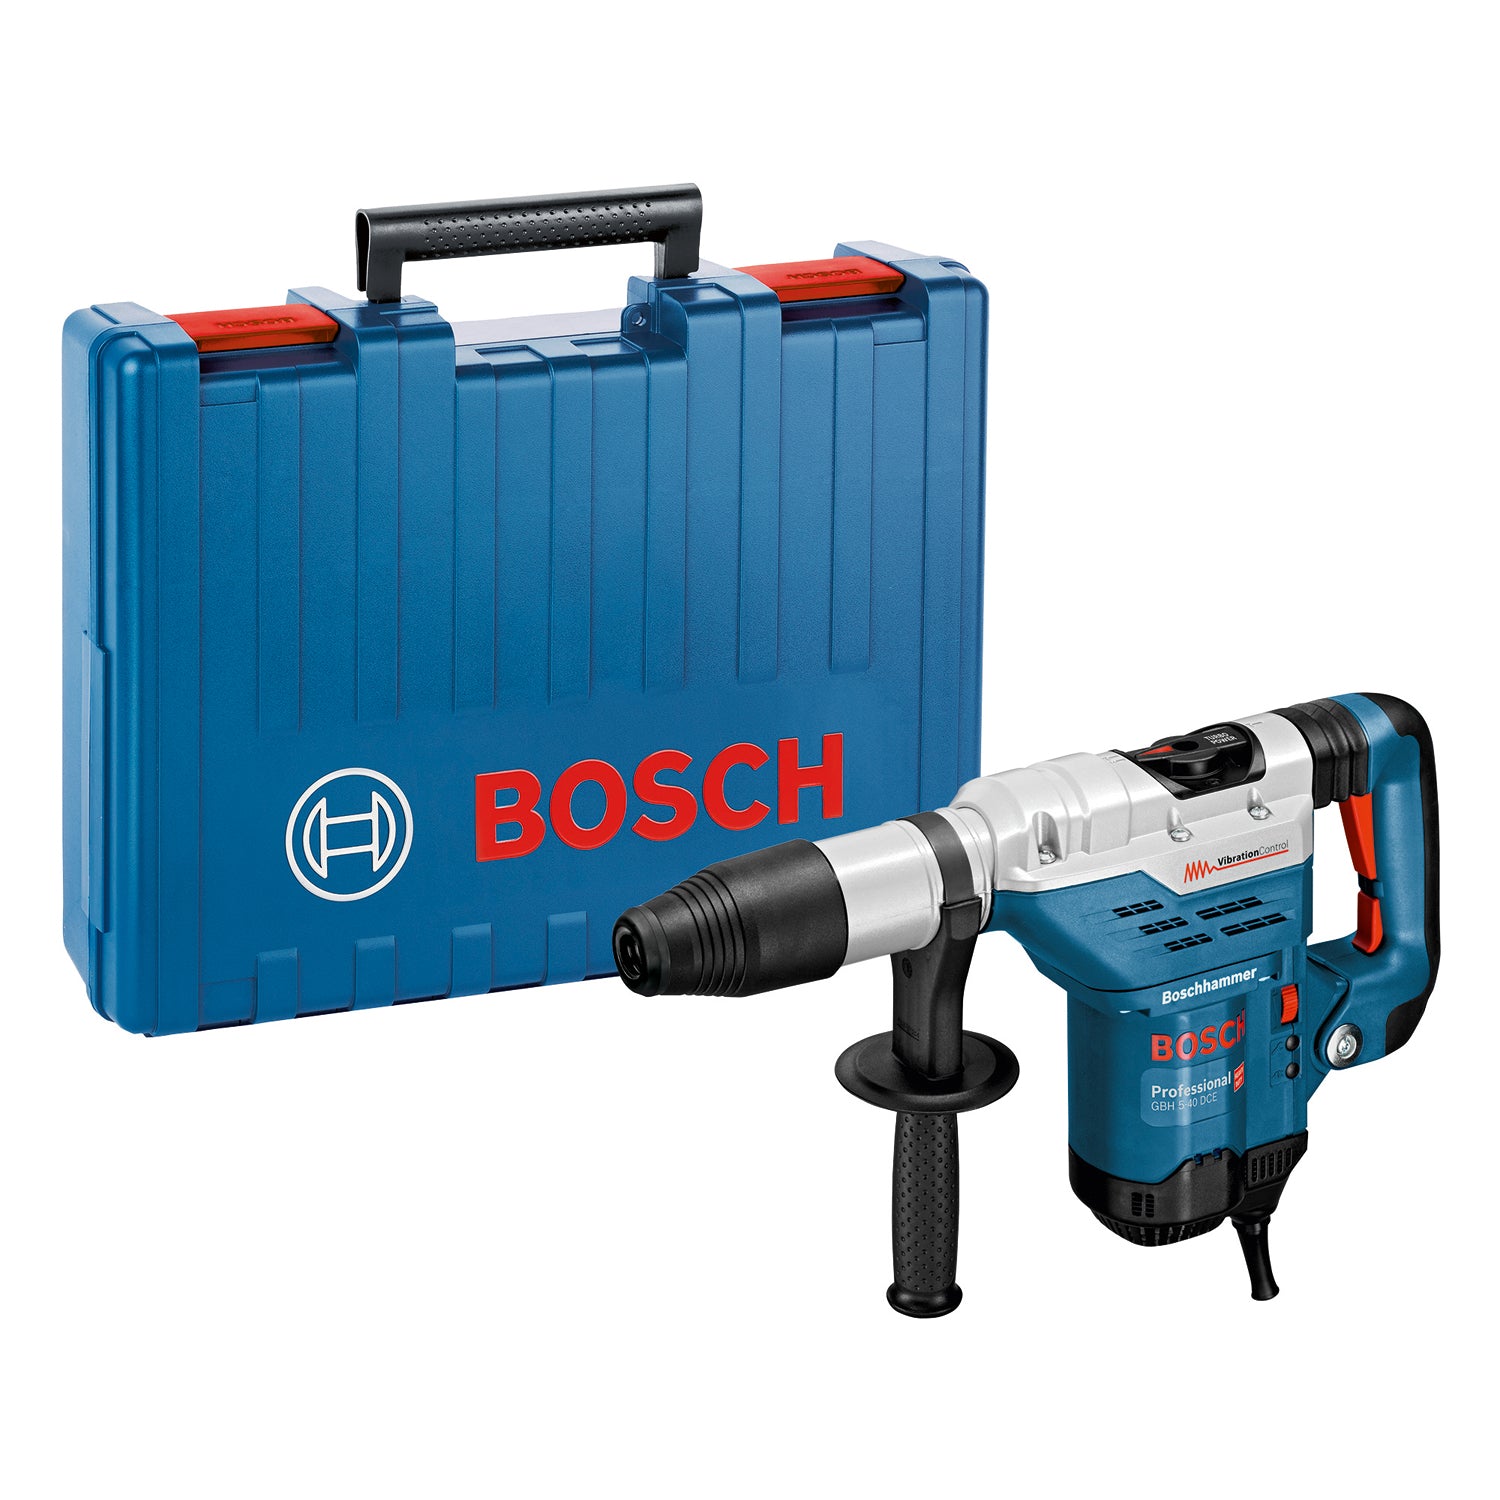 Bosch Professional GBH 5-40 DCE Bohrhammer mit SDS Max 8.8 Joule im Handwerkerkoffer